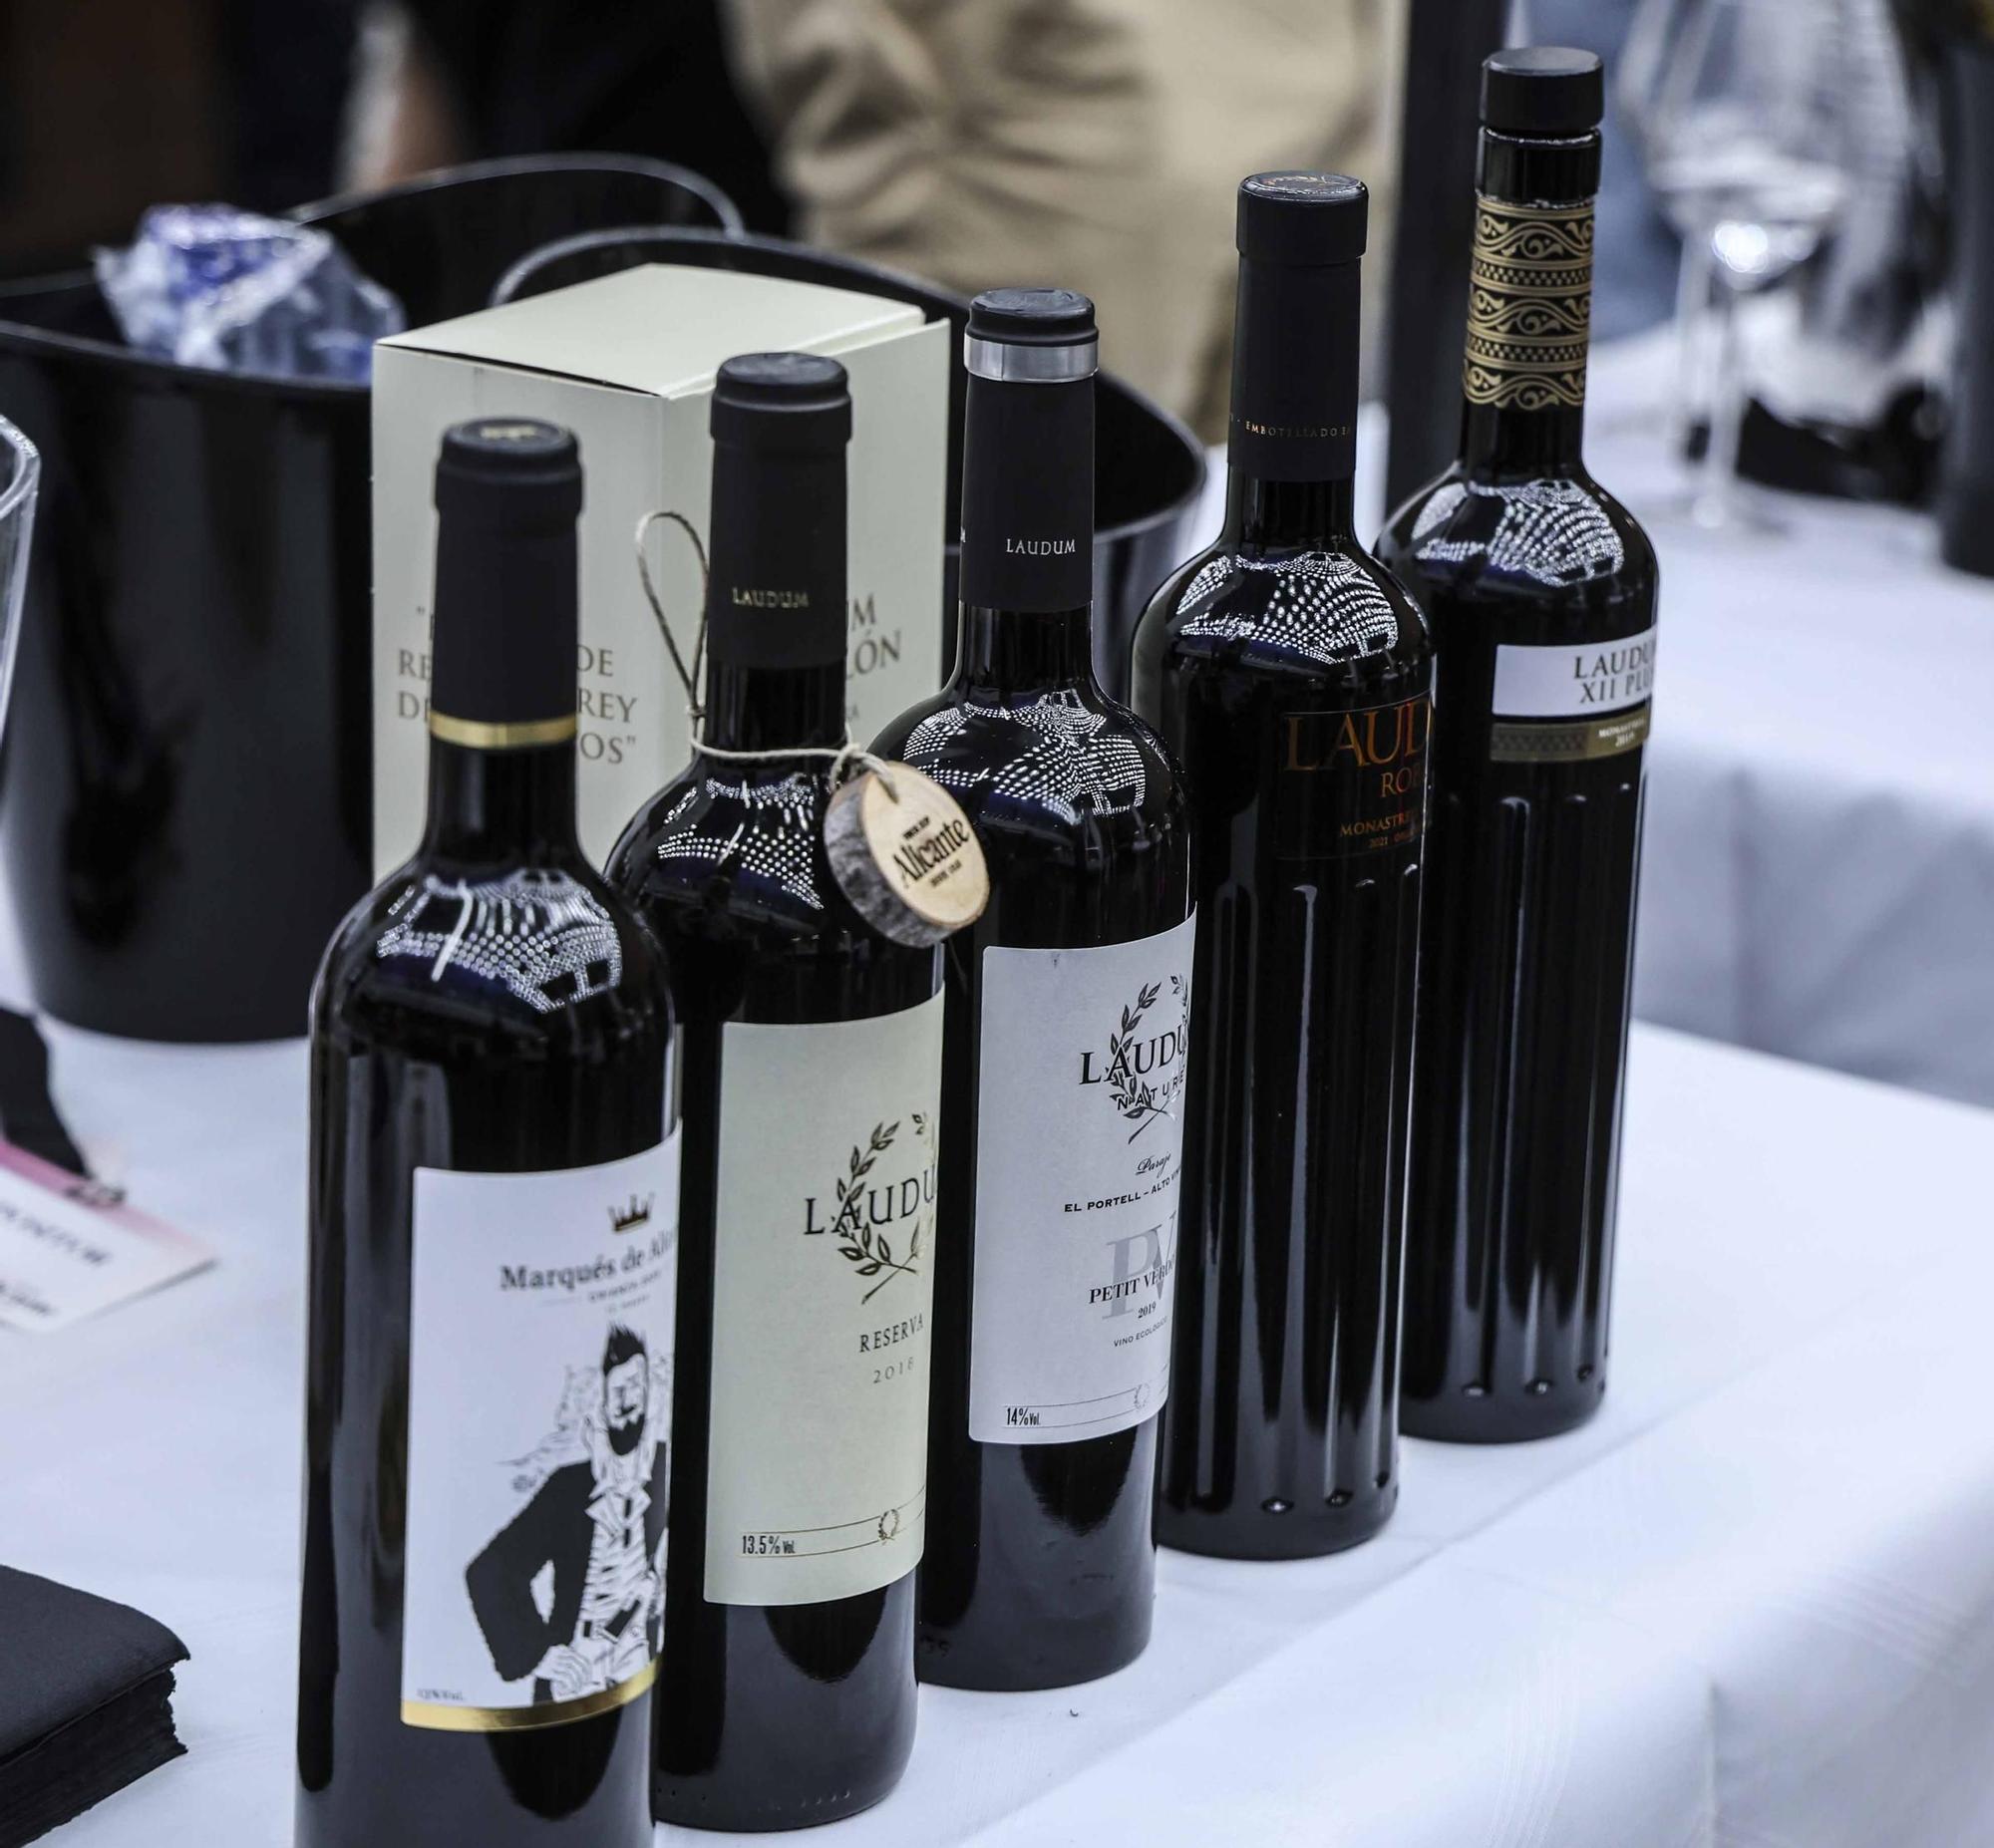 El Consejo Regulador de la Denominación de Origen Protegida Vinos de Alicante entrega sus premios anuales